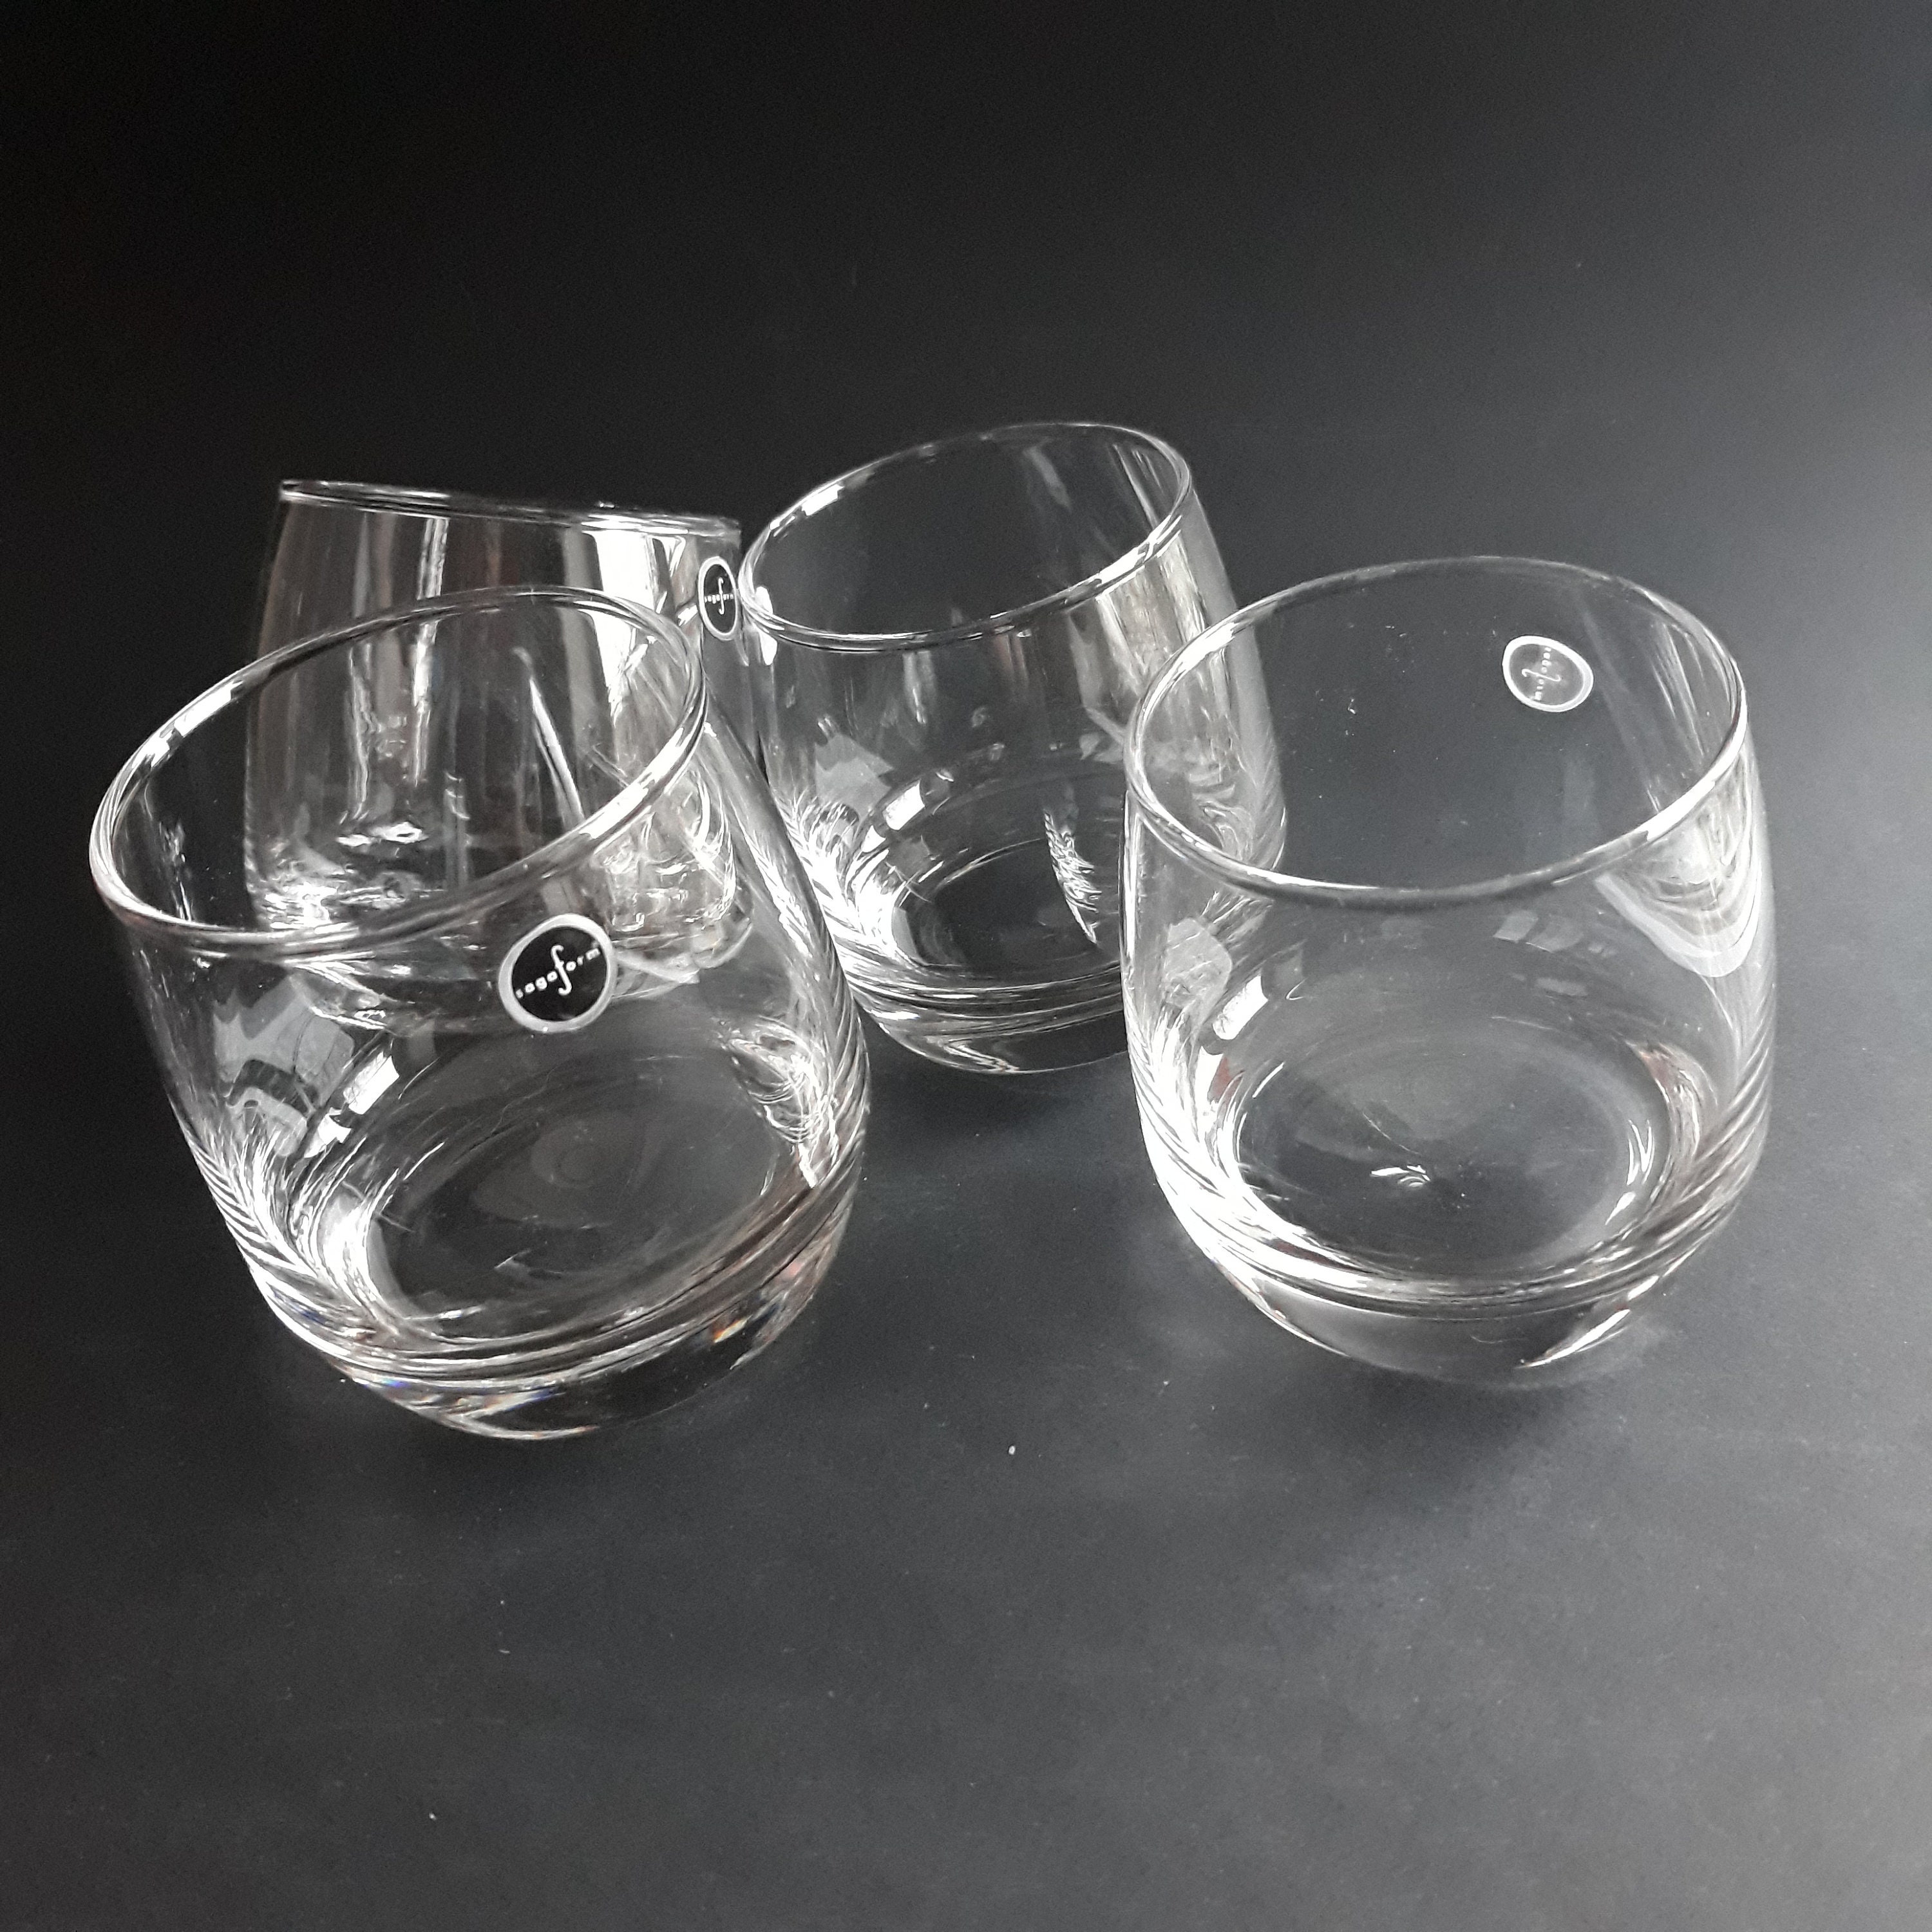 elk abortus Pijnboom Set of 4 Sagaform Sweden Rocking Whiskey Tumbler Glasses. - Etsy